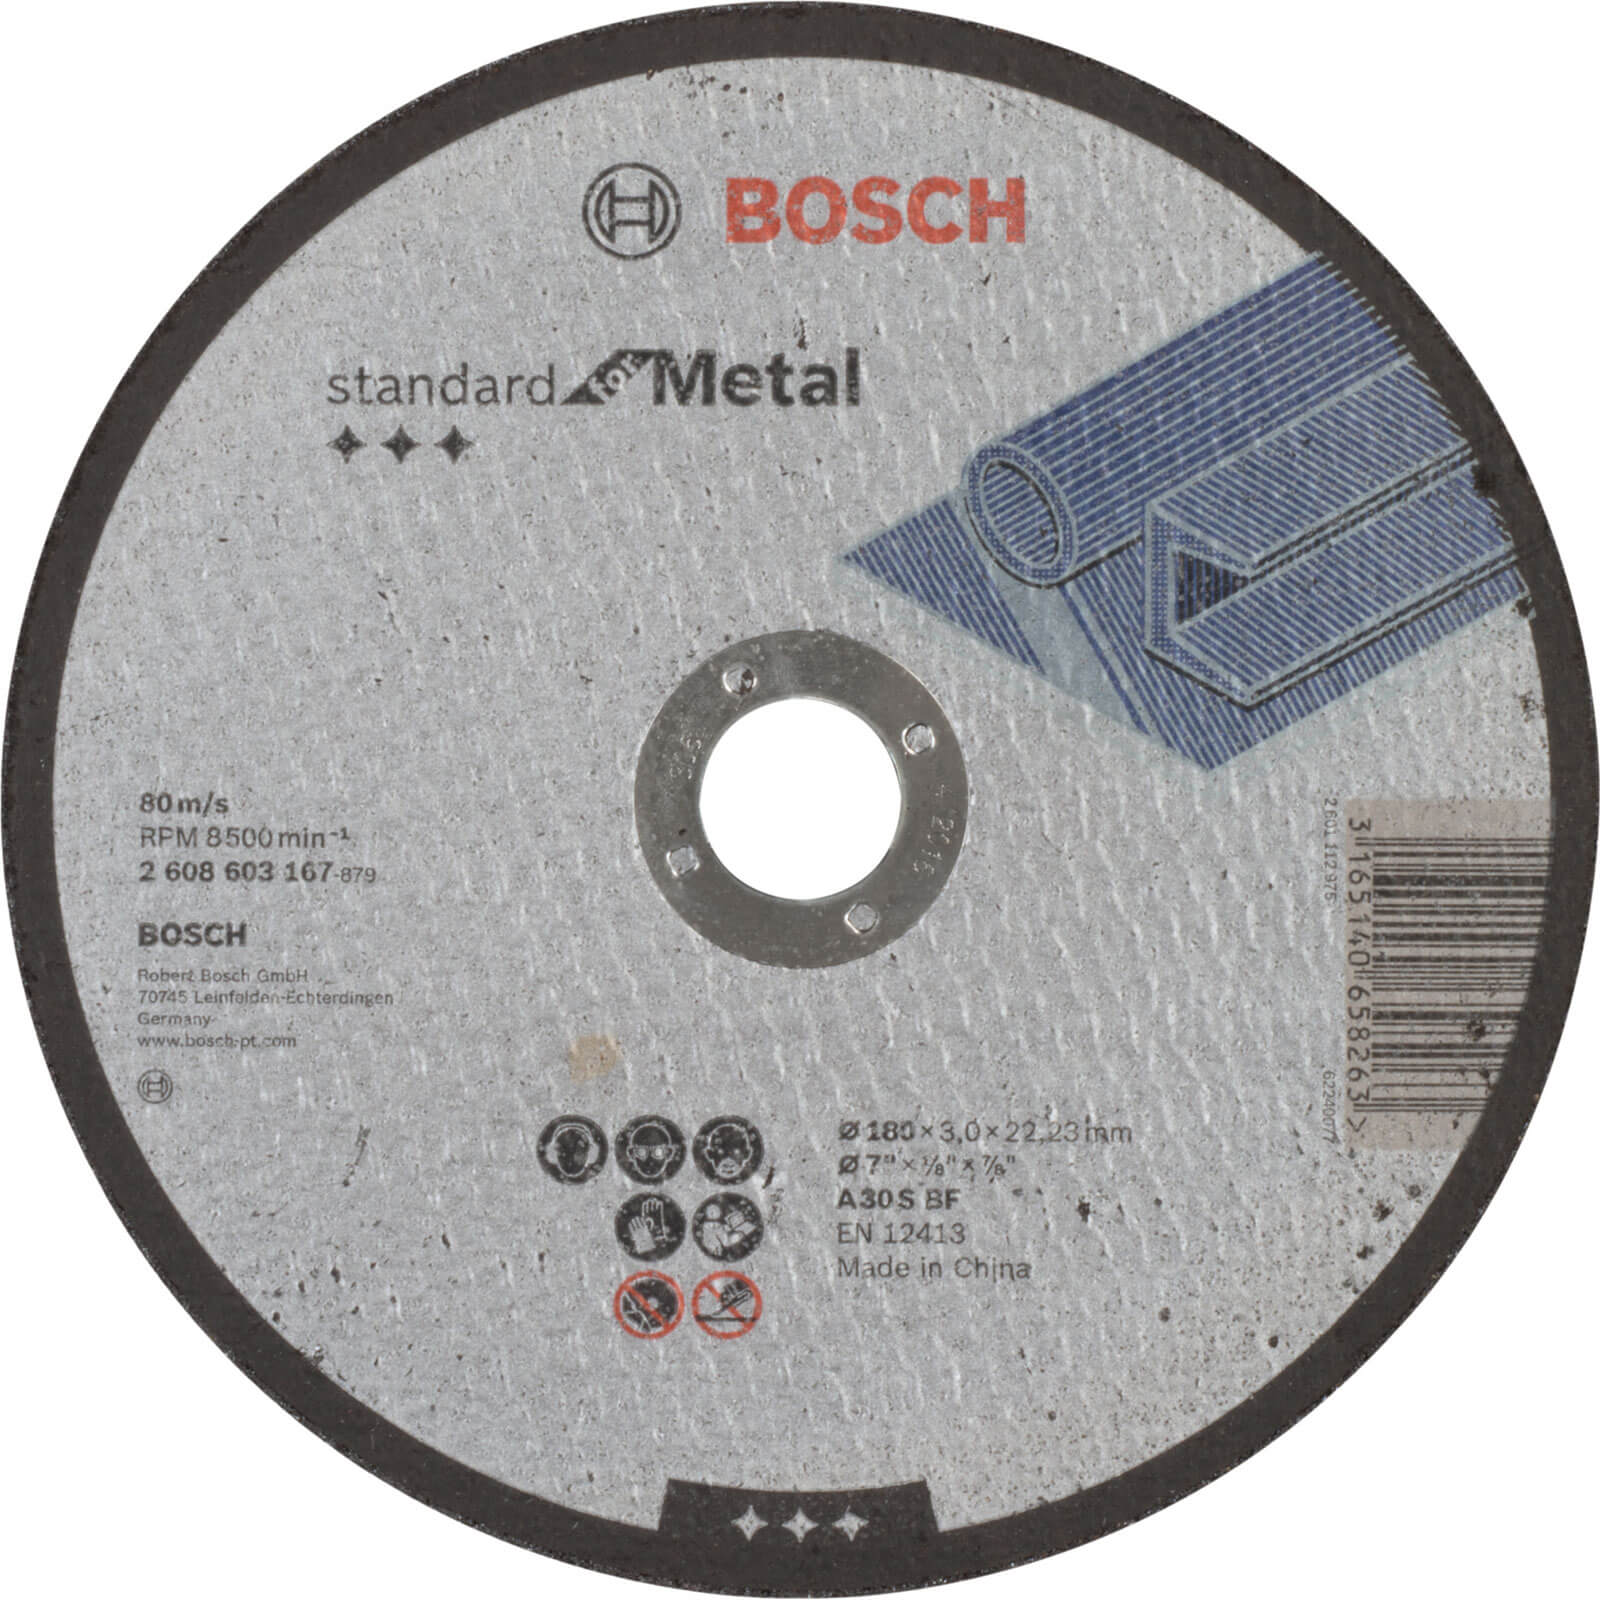 Photo of Bosch Standard Metal Cutting Disc 180mm 3mm 22mm